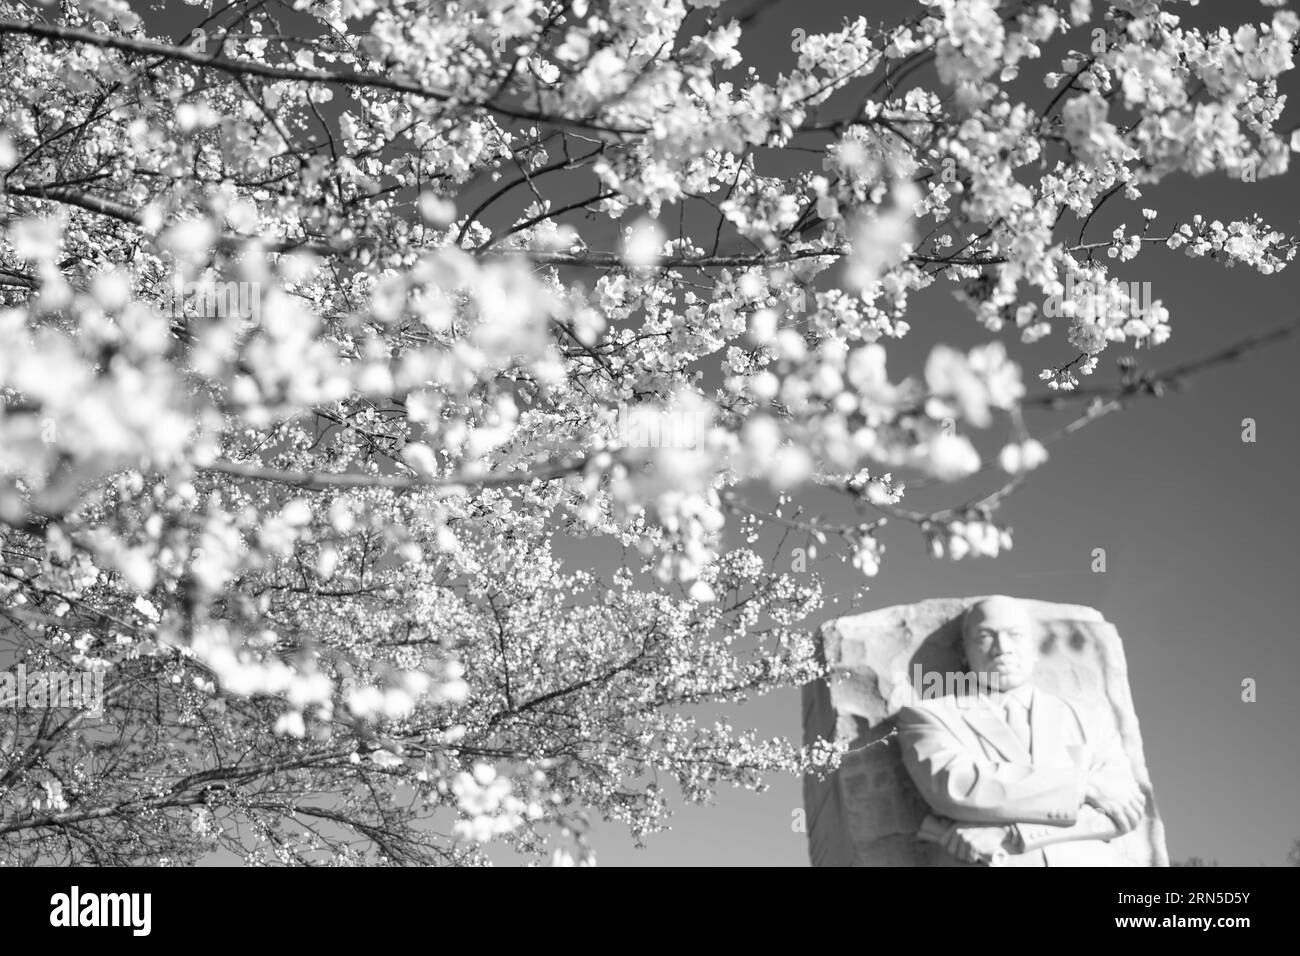 WASHINGTON DC, Vereinigte Staaten – Ein Schwarzweißfoto der berühmten Kirschblüten von Washington DC. Jedes Frühjahr blüht die Kirschblüte in voller Blüte um das Tidal Basin und markiert den Beginn des Frühlings in der Hauptstadt der Nation. Dieses jährliche Ereignis zieht Tausende an und symbolisiert die andauernde Freundschaft zwischen den USA und Japan, ein Geschenk Tokios aus dem Jahr 1912. Stockfoto